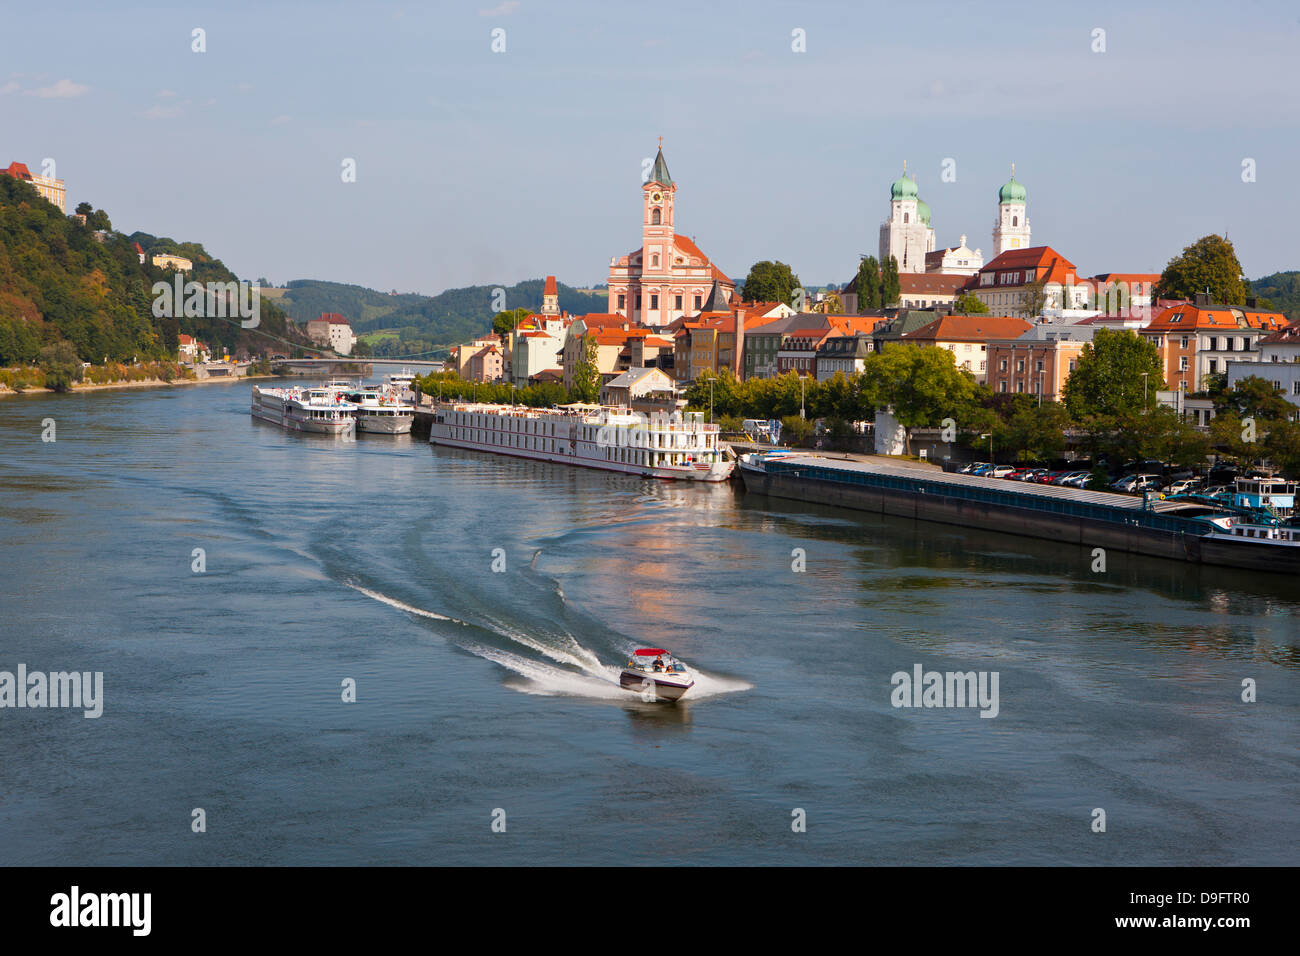 El río Danubio, Passau, Baviera, Alemania Foto de stock